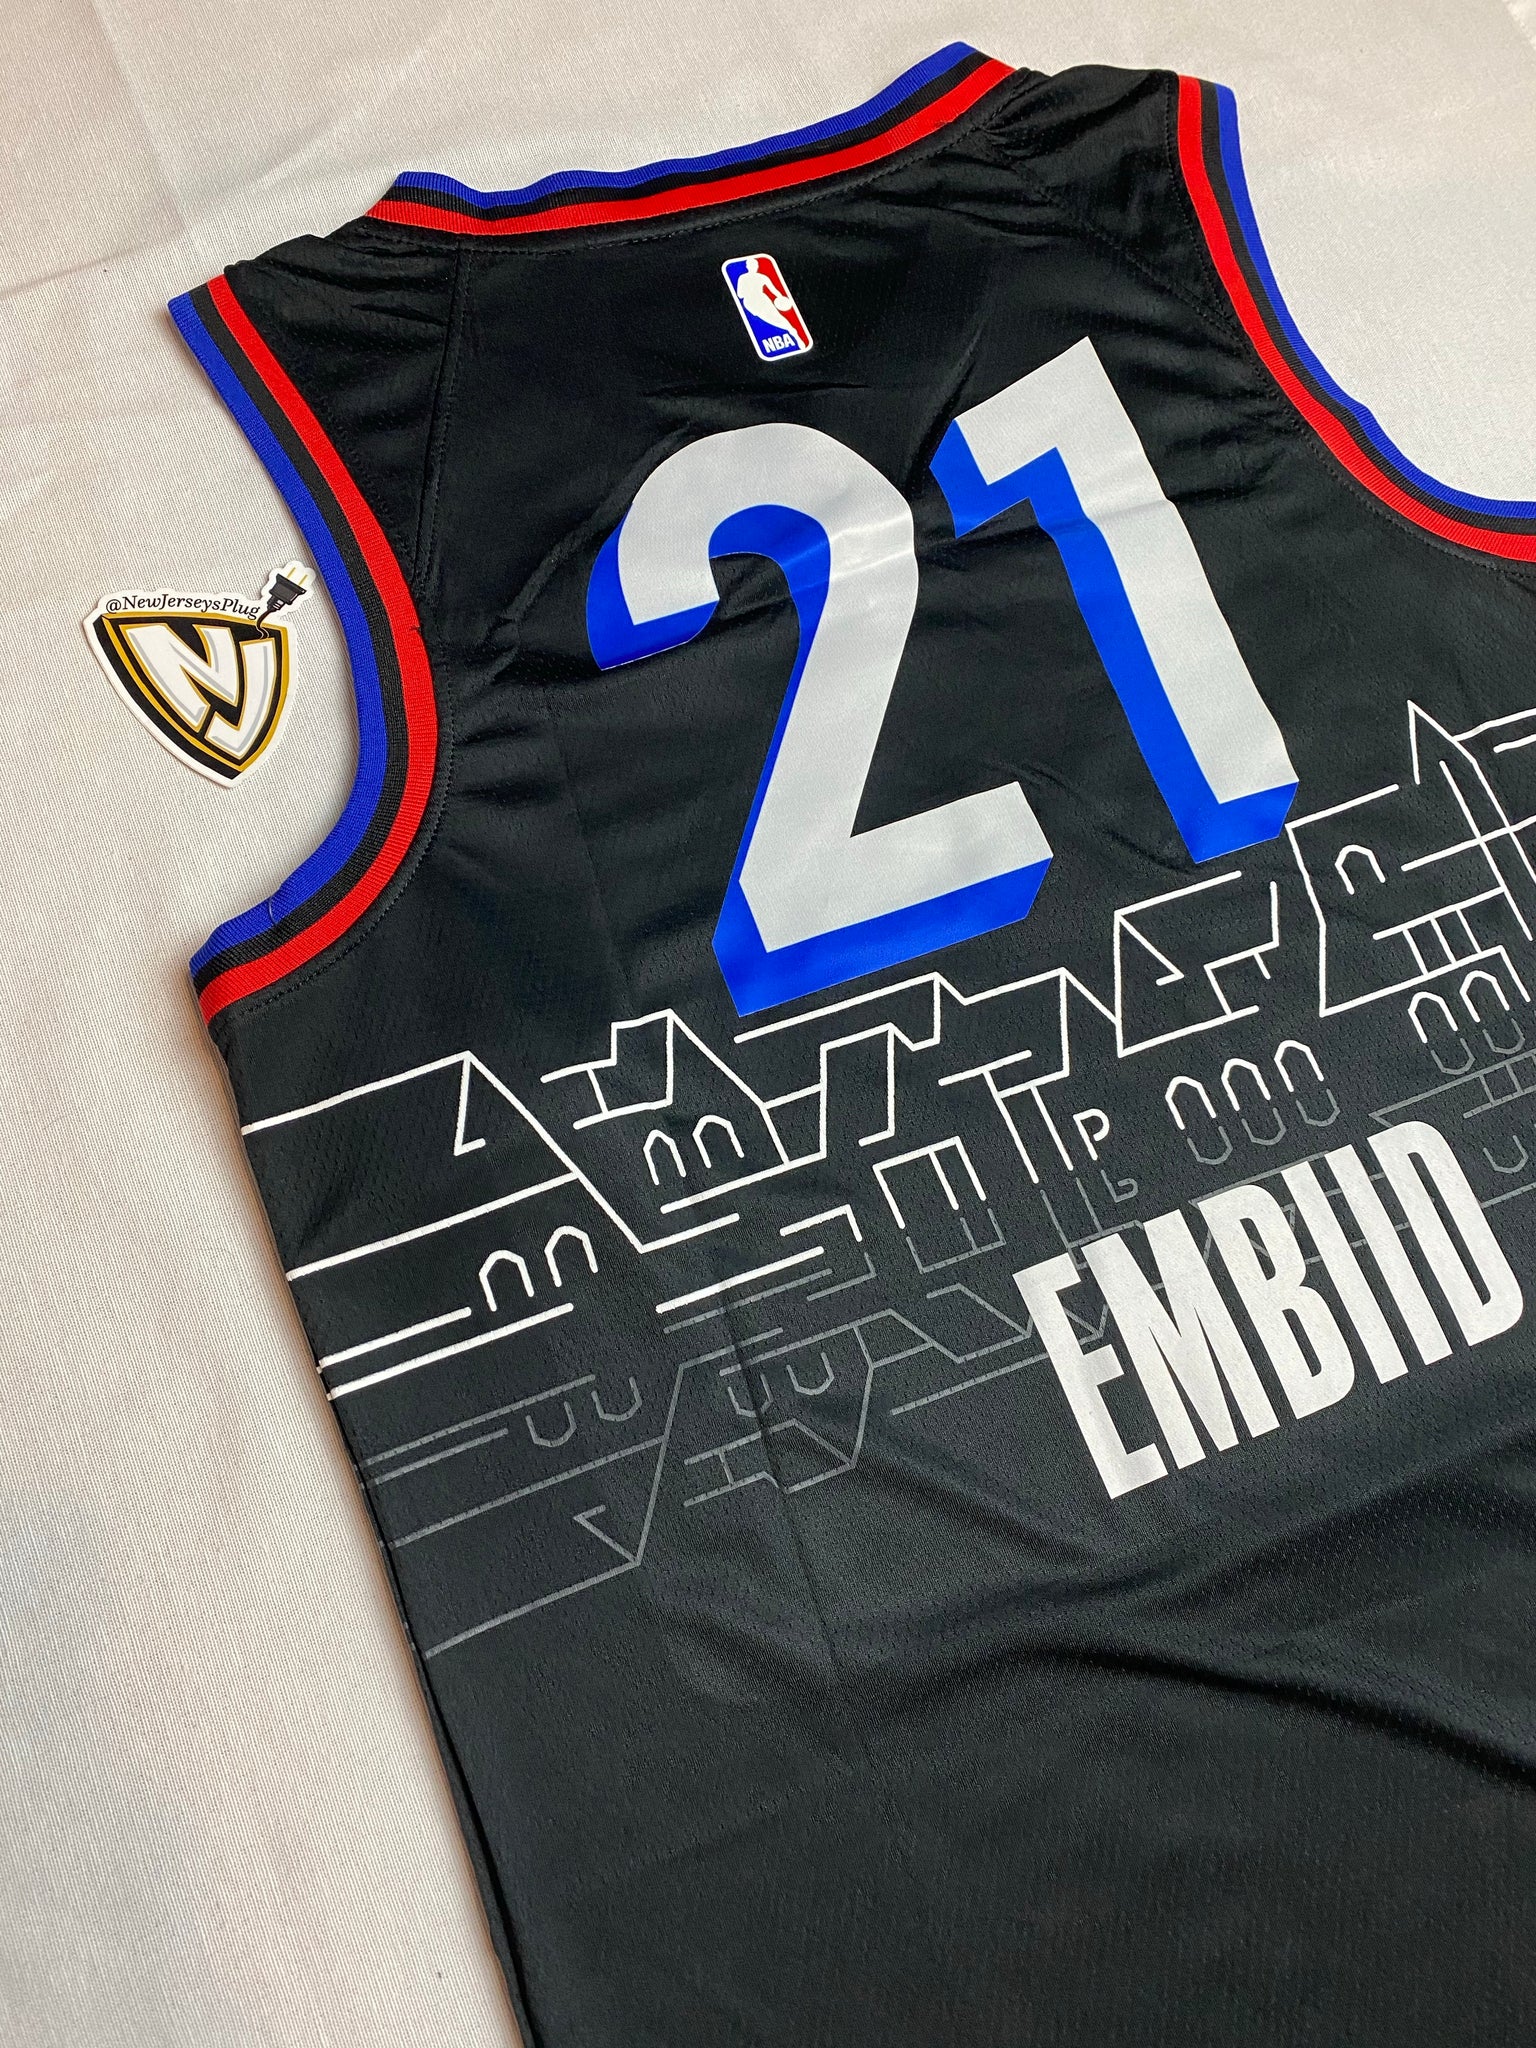 Philadelphia 76ers Joel Embiid 21 City Jersey – NewJerseysPlug